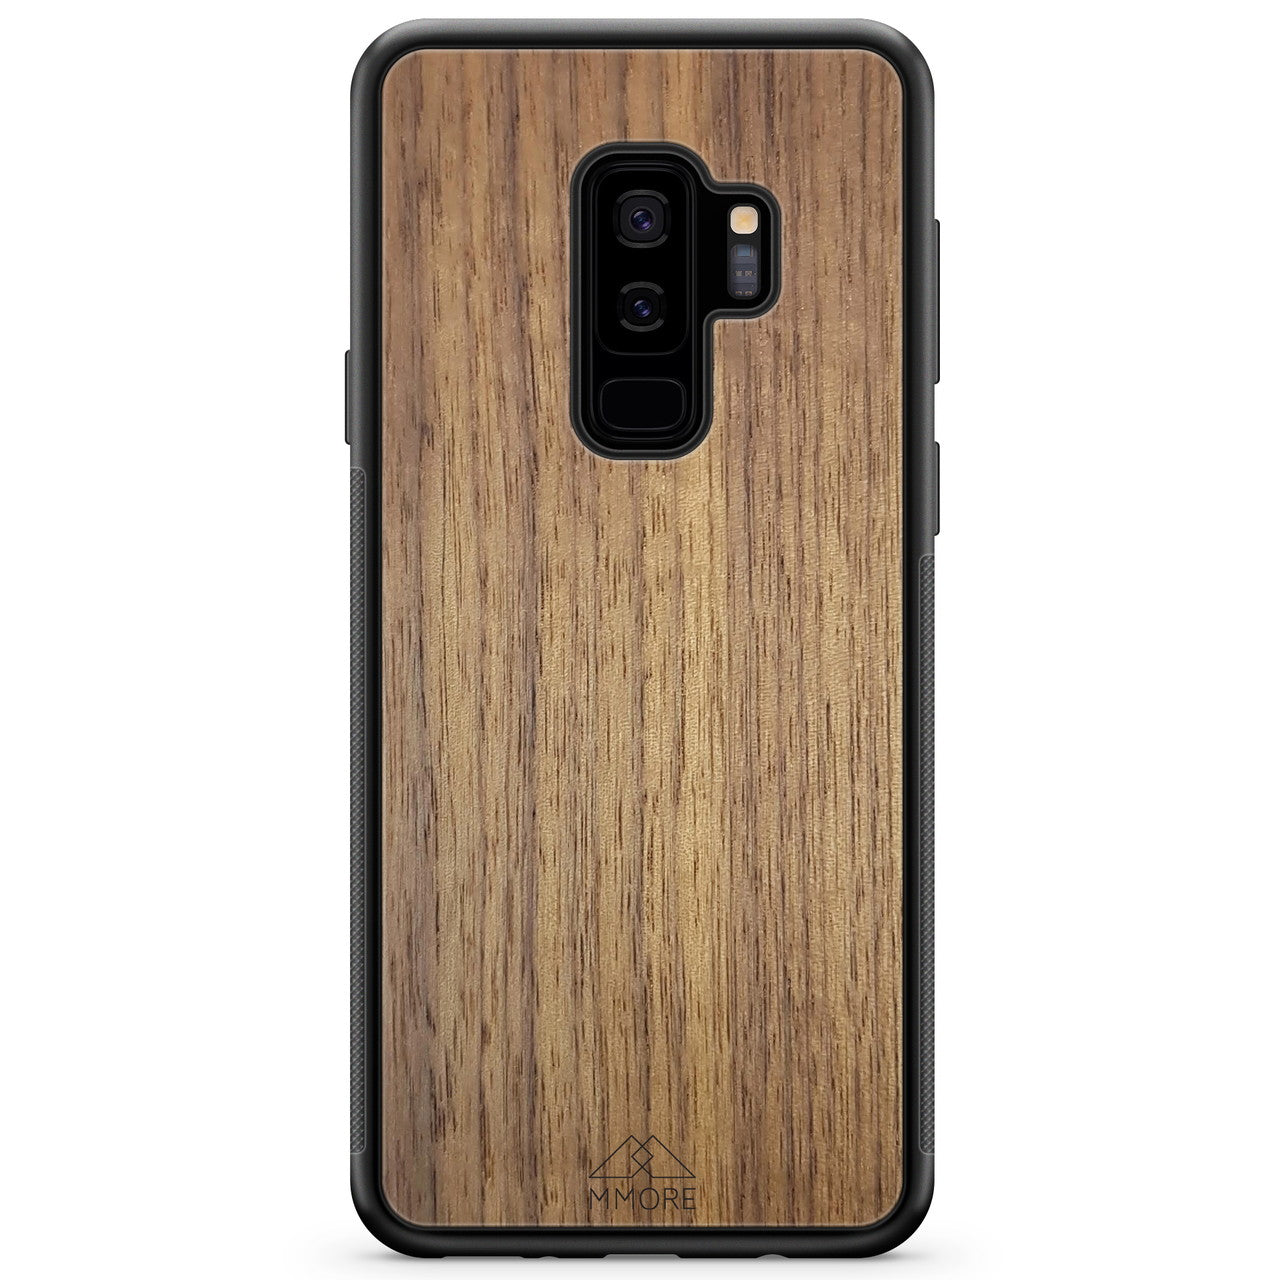 Деревянный чехол для телефона Samsung S9 Plus из американского ореха